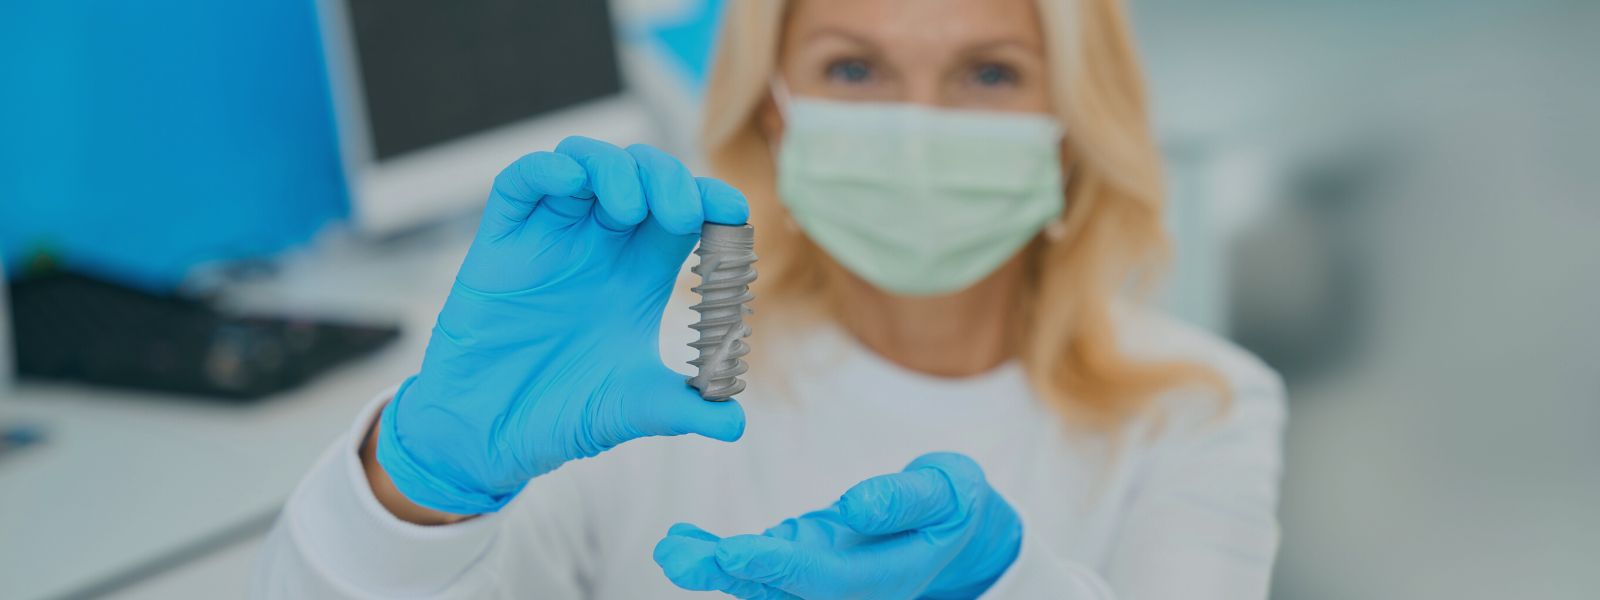 implante dental fallido